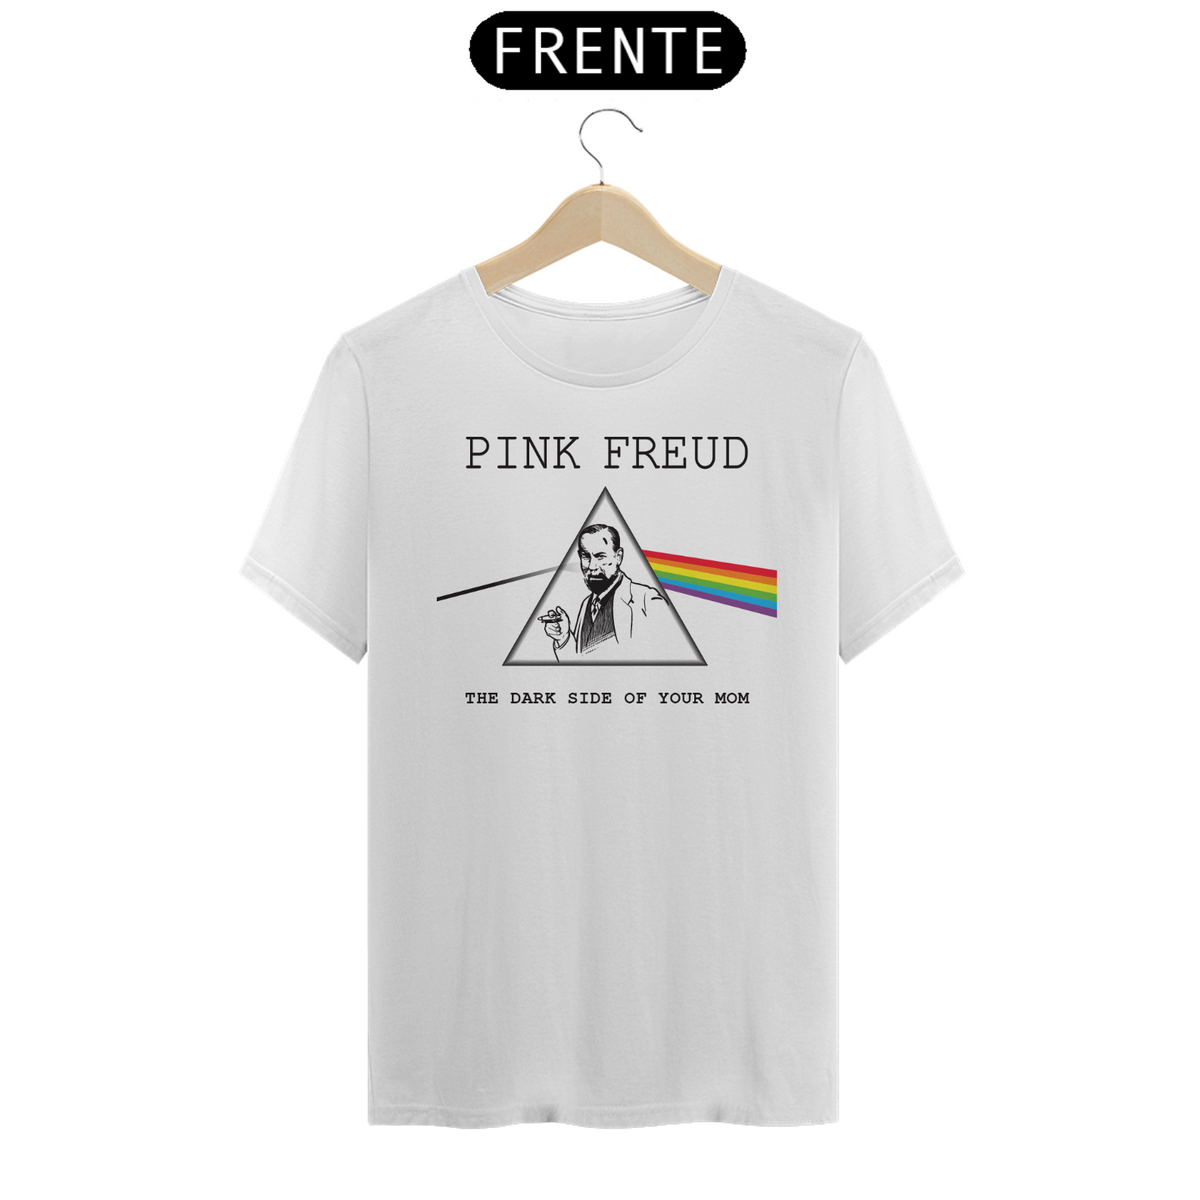 Nome do produto: Pink Freud (cores claras)